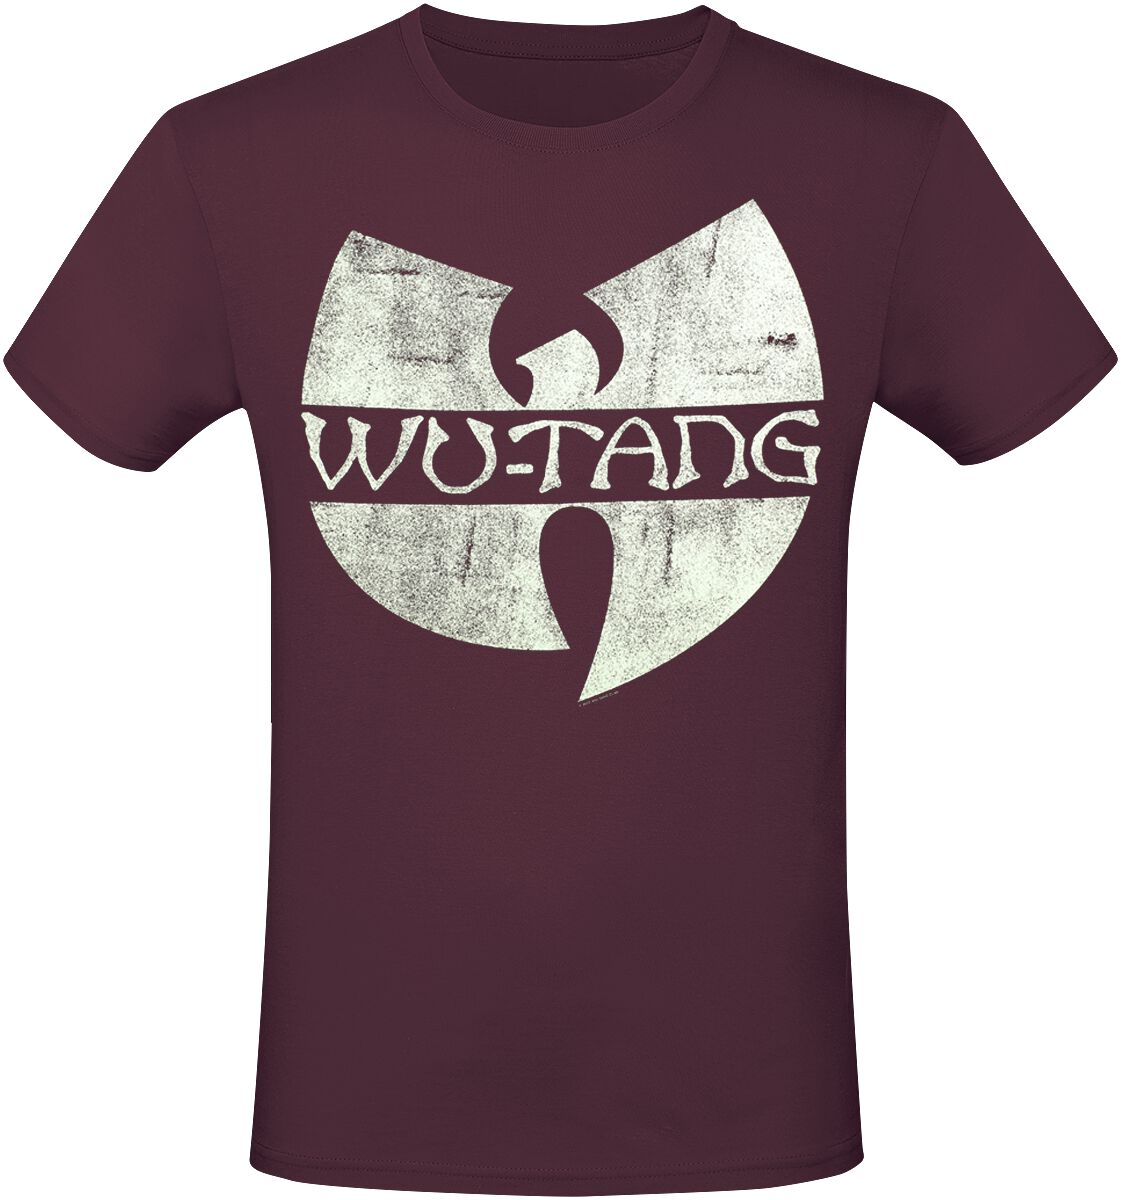 Wu-Tang Clan T-Shirt - Logo - S bis XXL - für Männer - Größe M - rot  - Lizenziertes Merchandise!